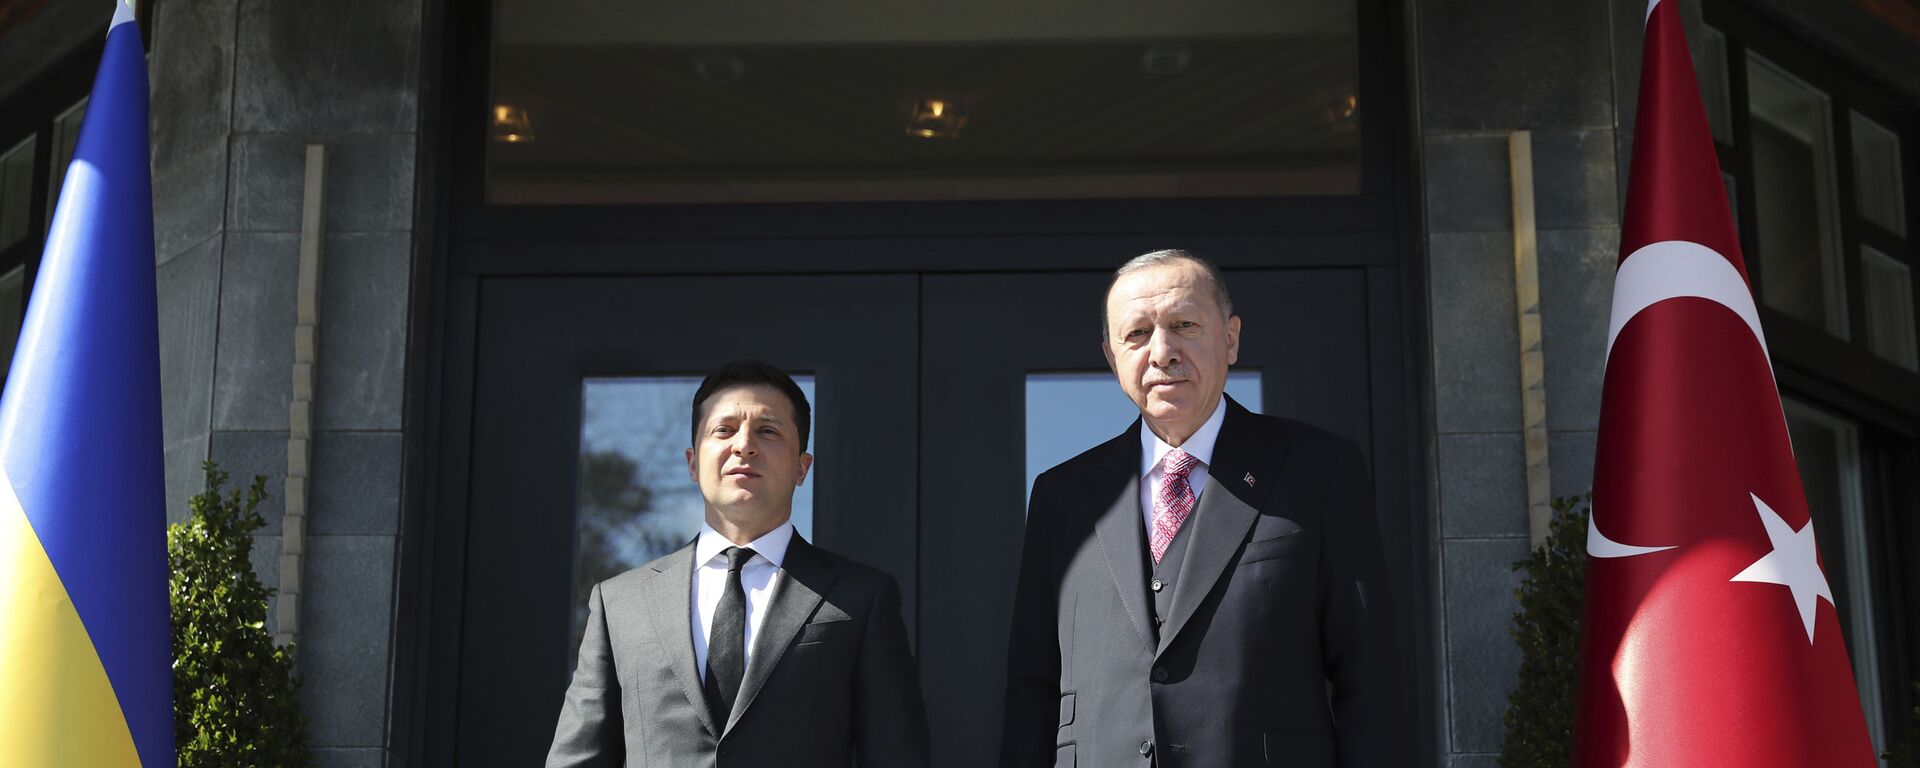 Президент Украины Владимир Зеленский и президент Турции Реджеп Тайип Эрдоган - Sputnik Латвия, 1920, 12.04.2021